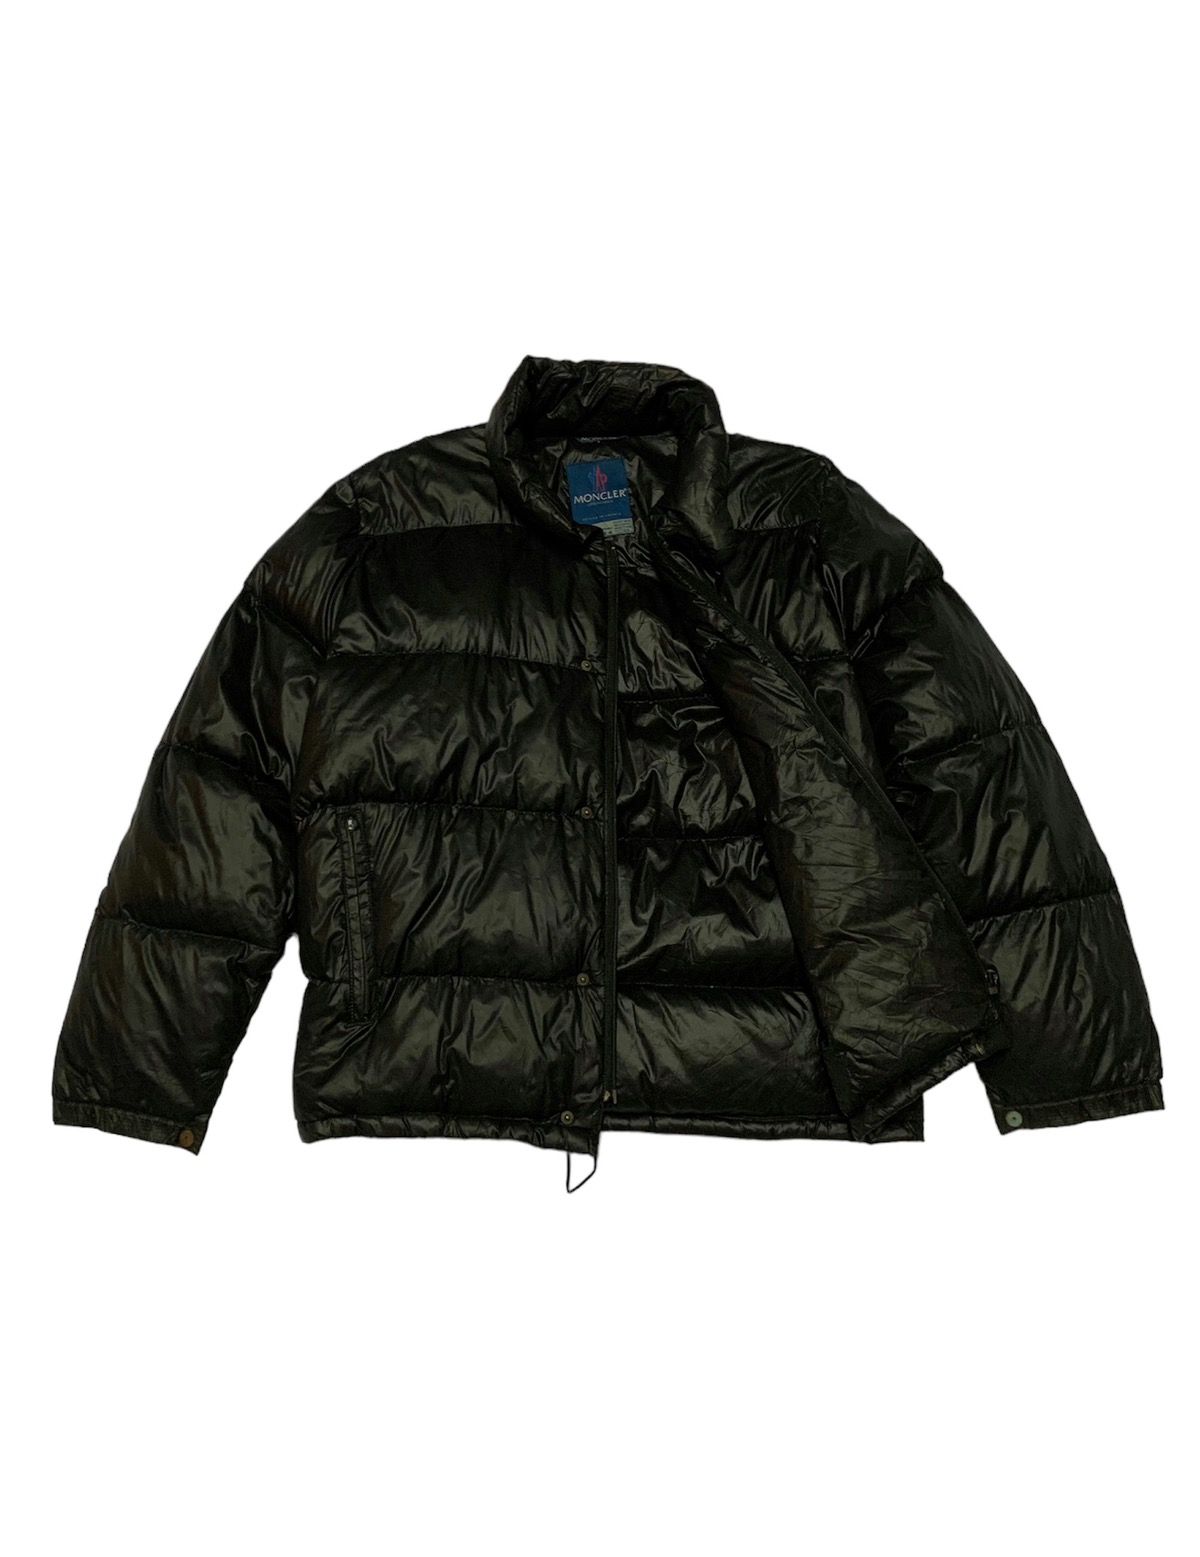 Vintage Moncler Grenoble Puffer Black Jacket - 1